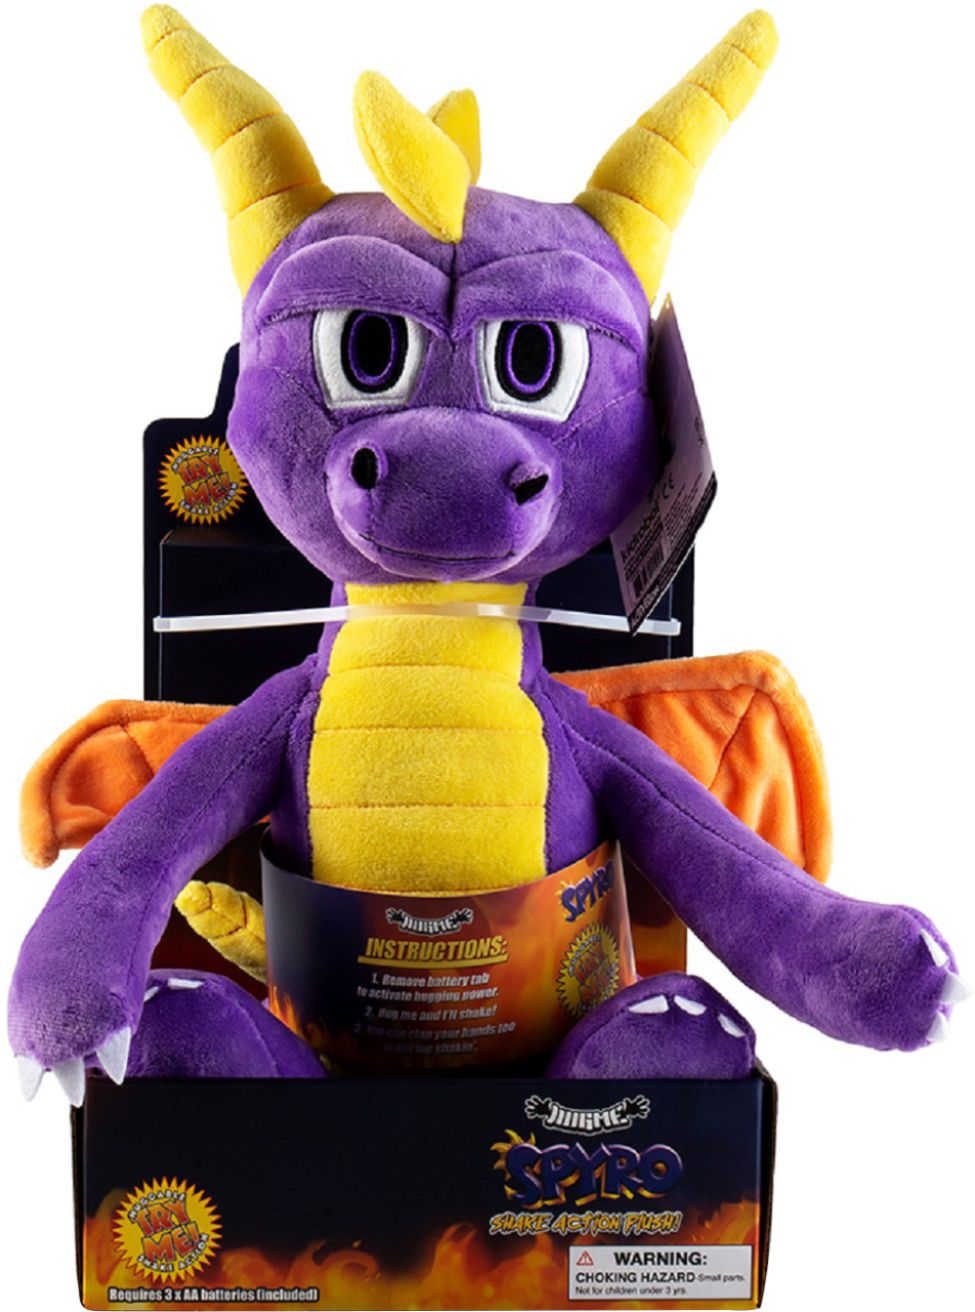 spyro the dragon plush toy